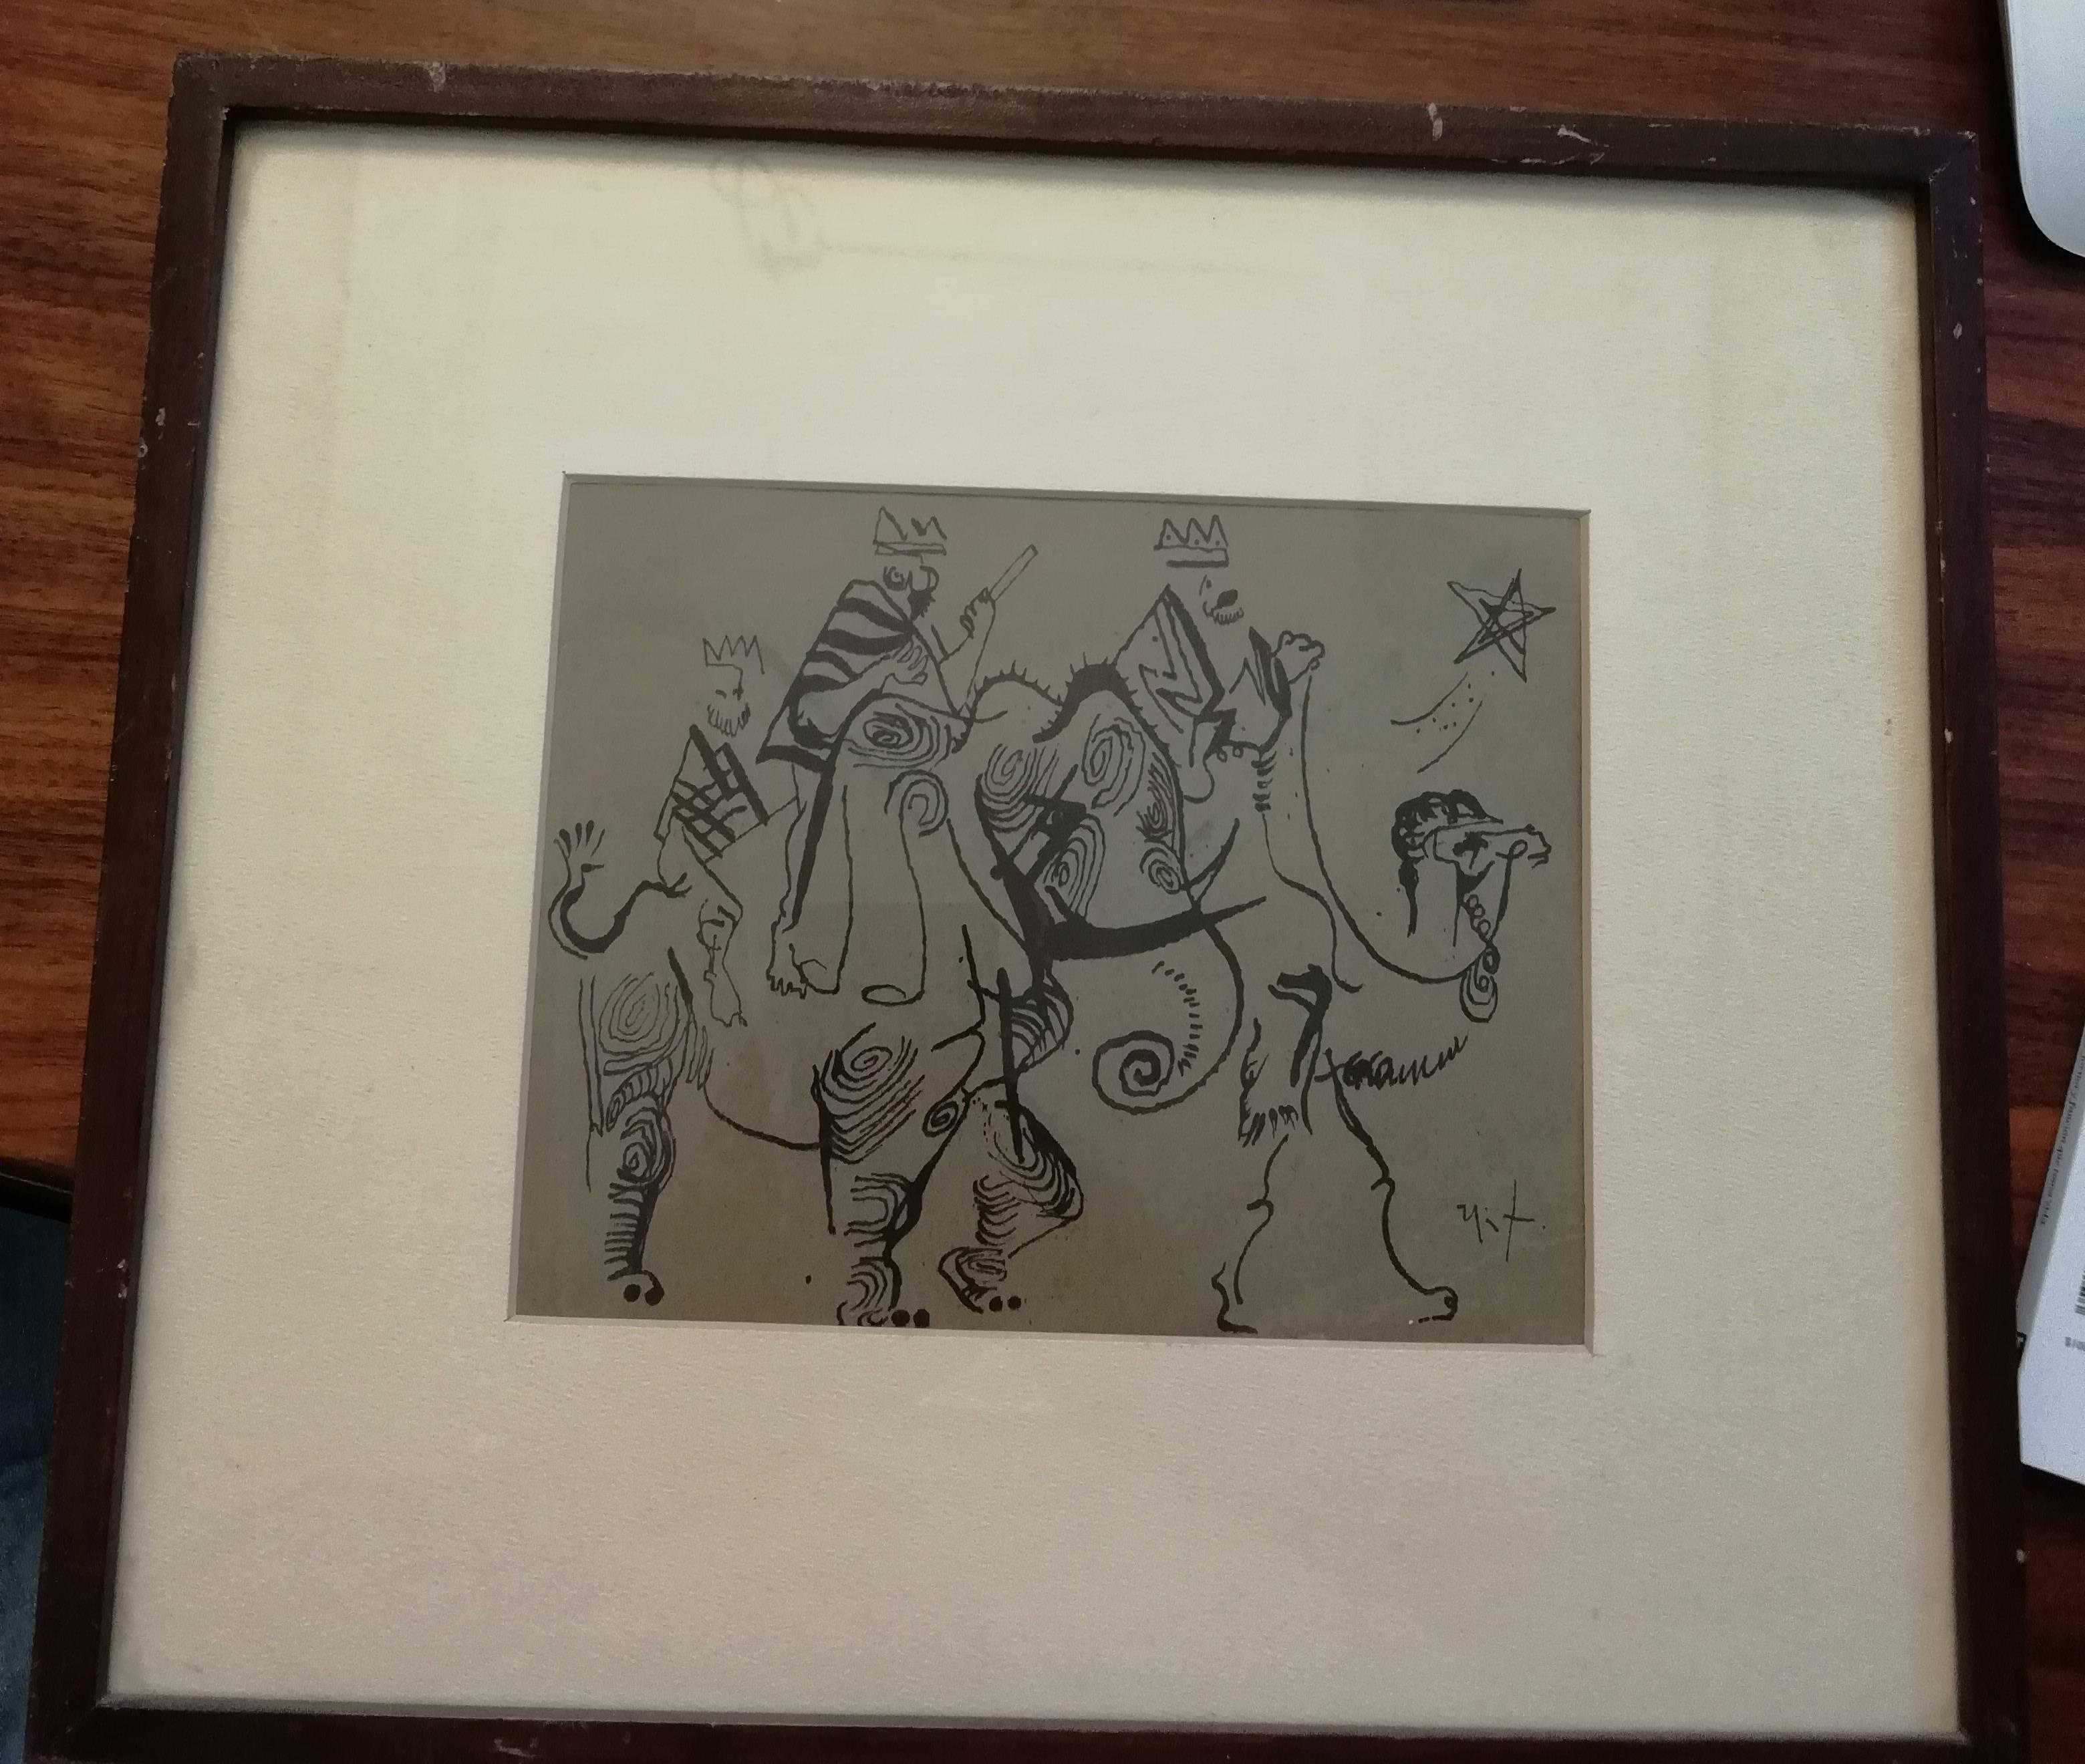 Eine schöne Zeichnung mit Tusche auf Papier, die die drei Weisen darstellt, vom mexikanischen Künstler Rodolfo Nieto, um 1970. Die Zeichnung hat einen Holzrahmen und ein beiges Passepartout.

Signiert unten rechts.

Abmessungen der Zeichnung: 15